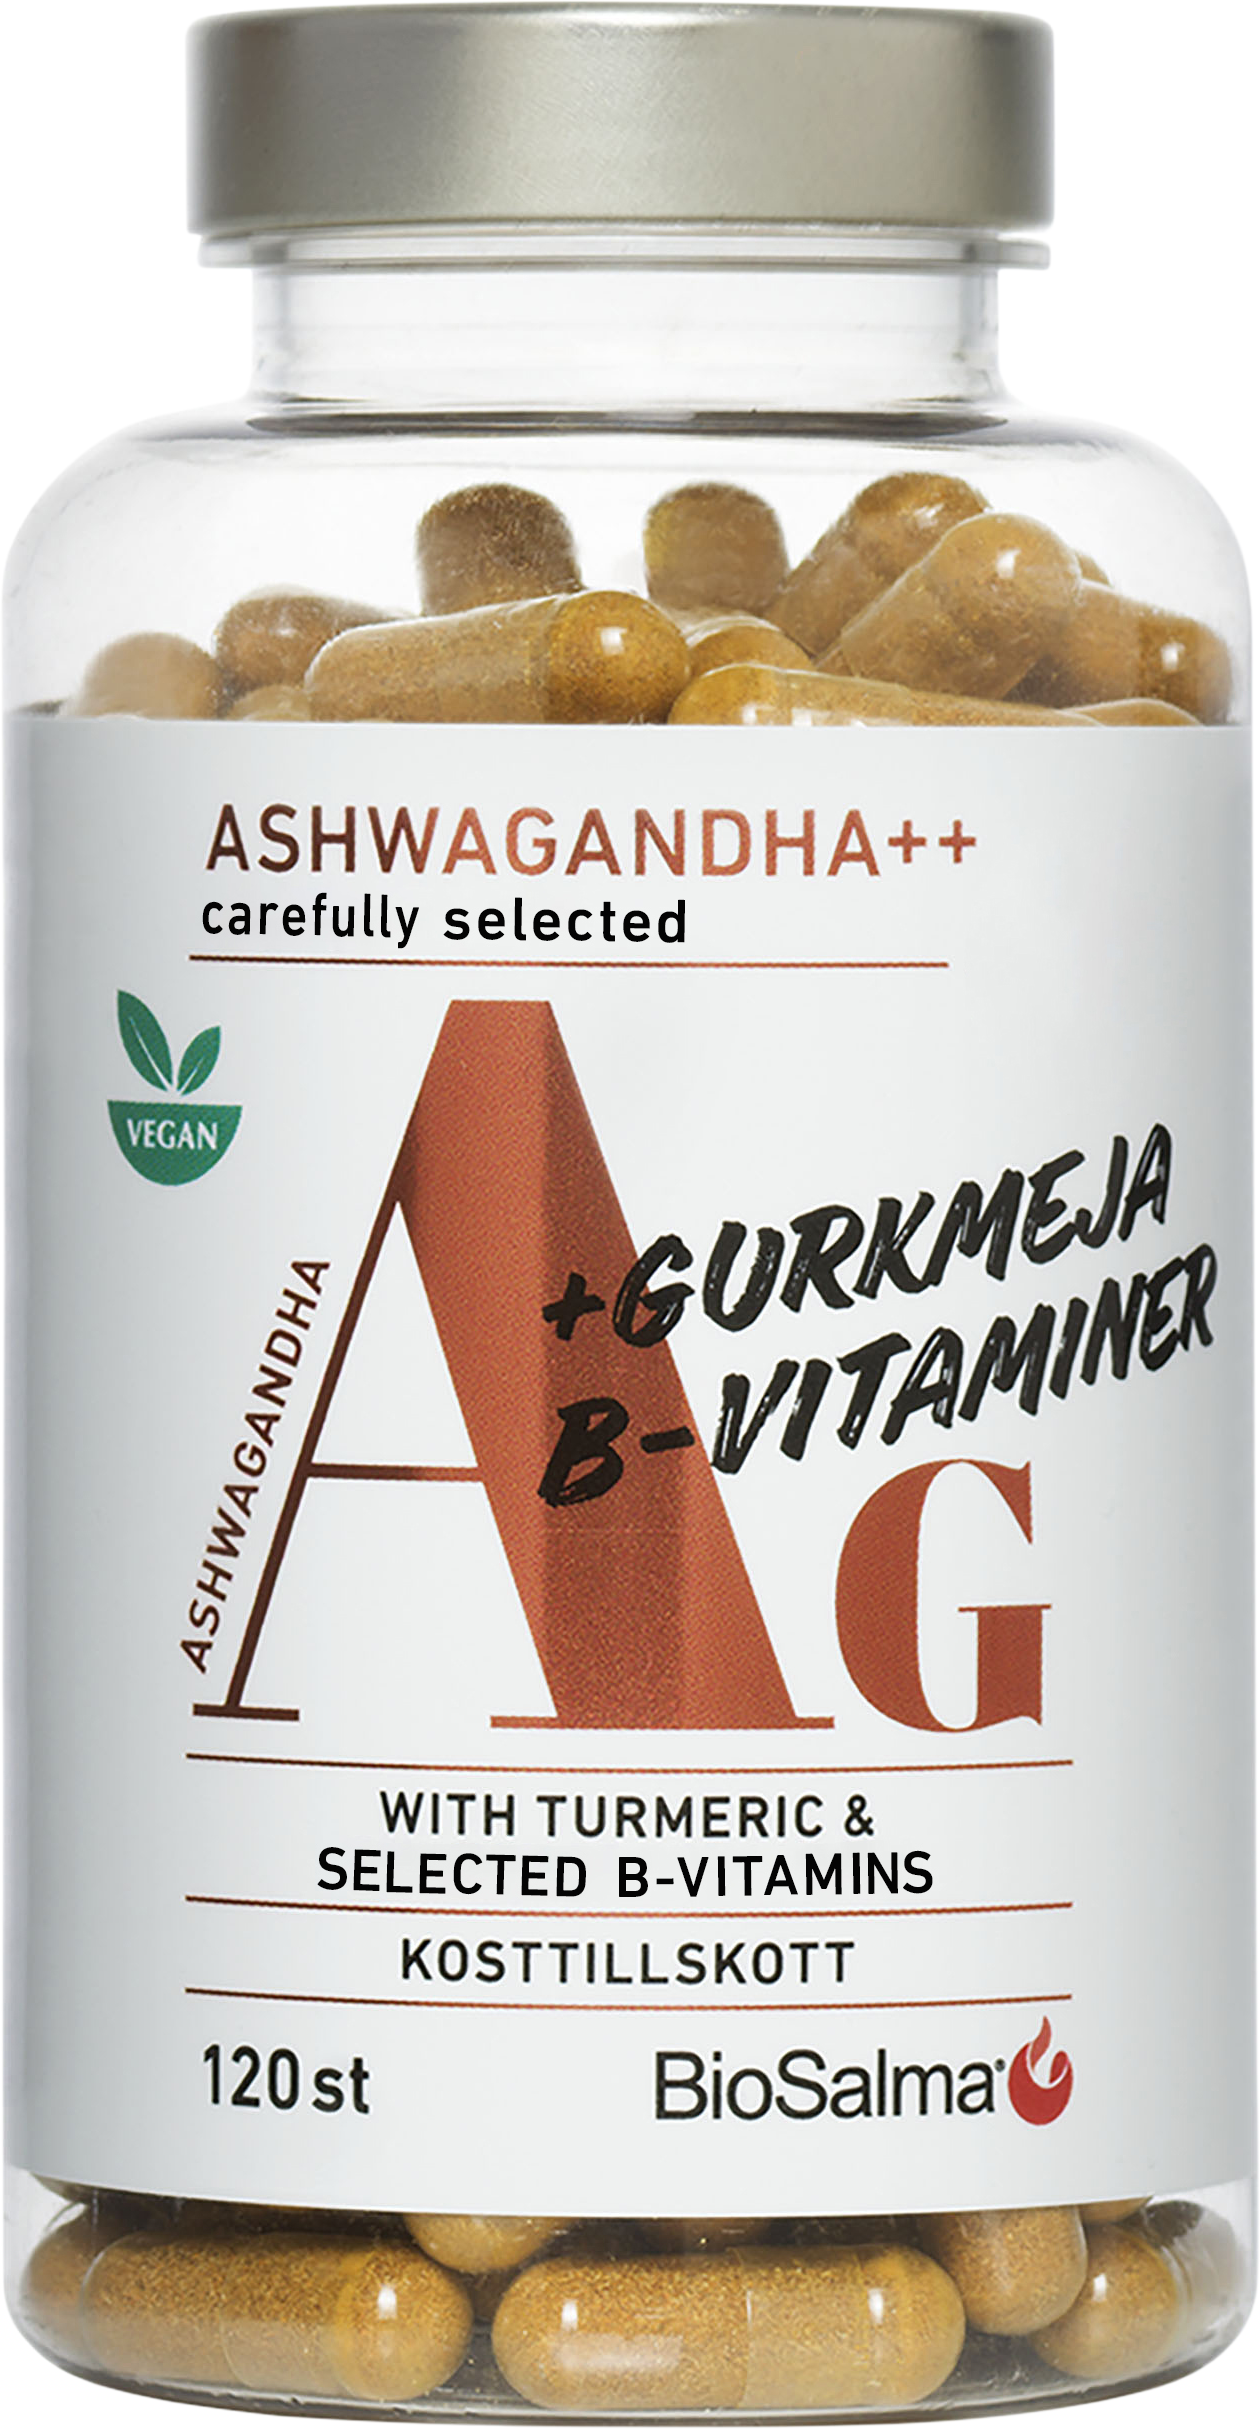 Biosalma Ashwagandha + Gurkmeja, B-vitaminer 120 st